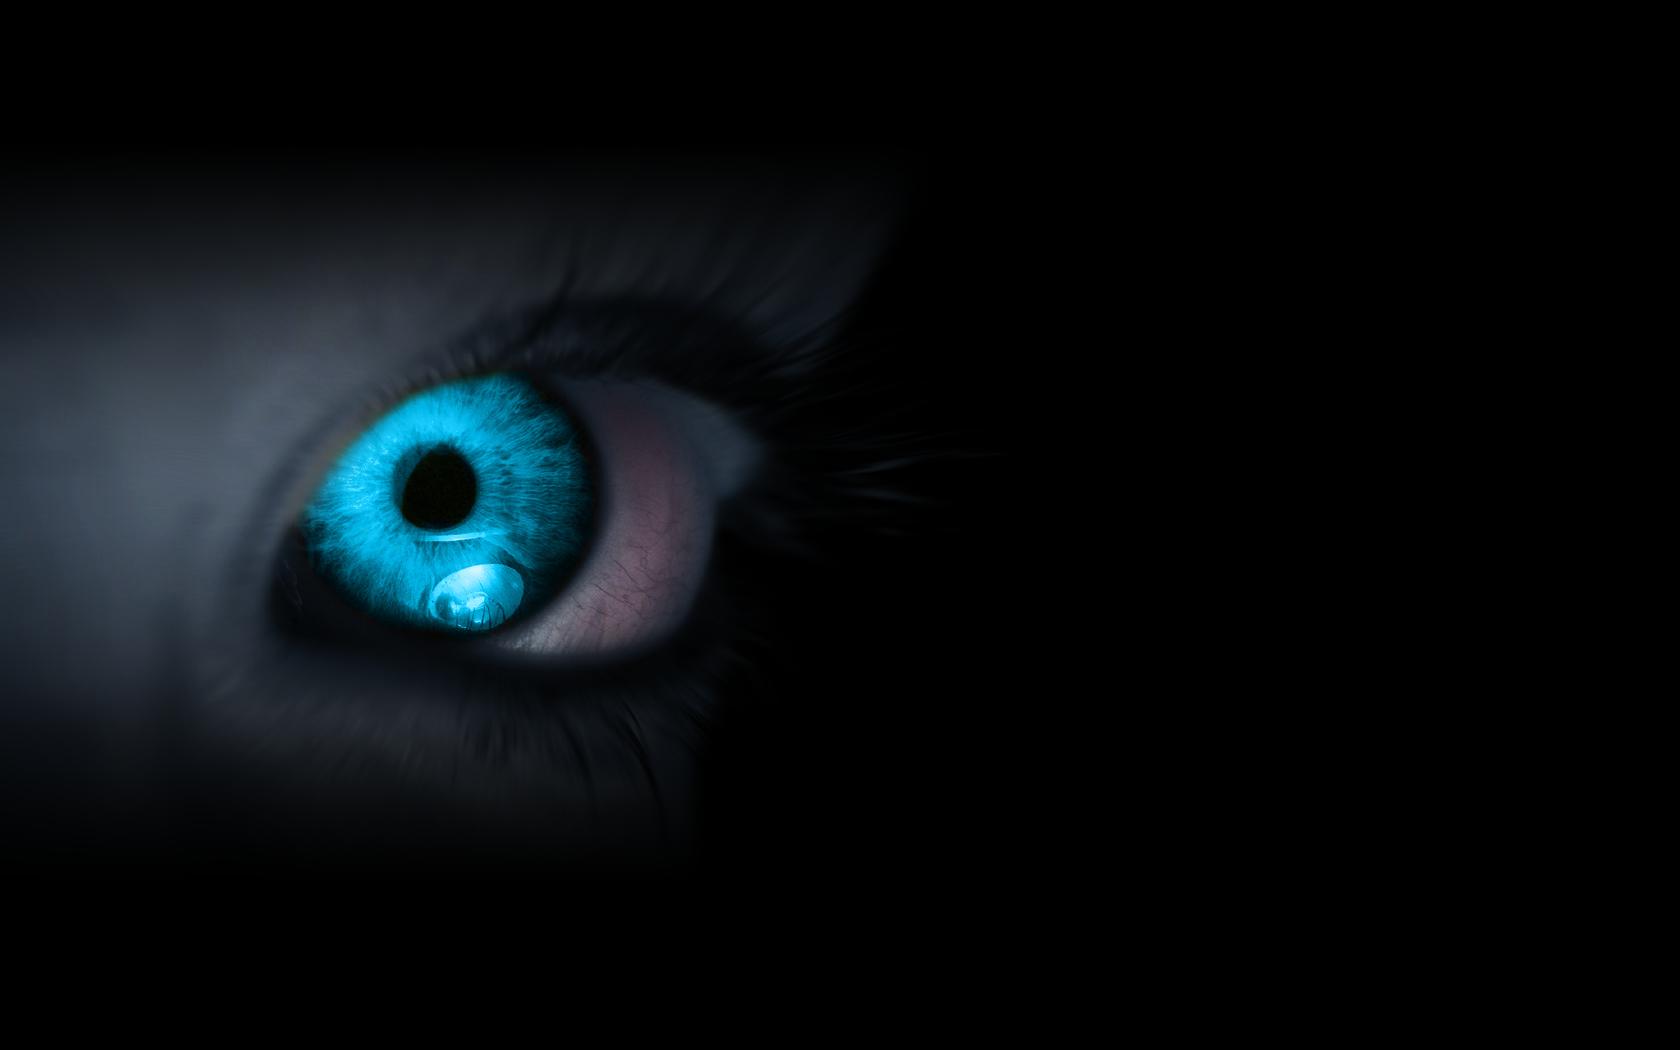 사랑의 눈 벽지,푸른,눈,아이리스,검정,어둠